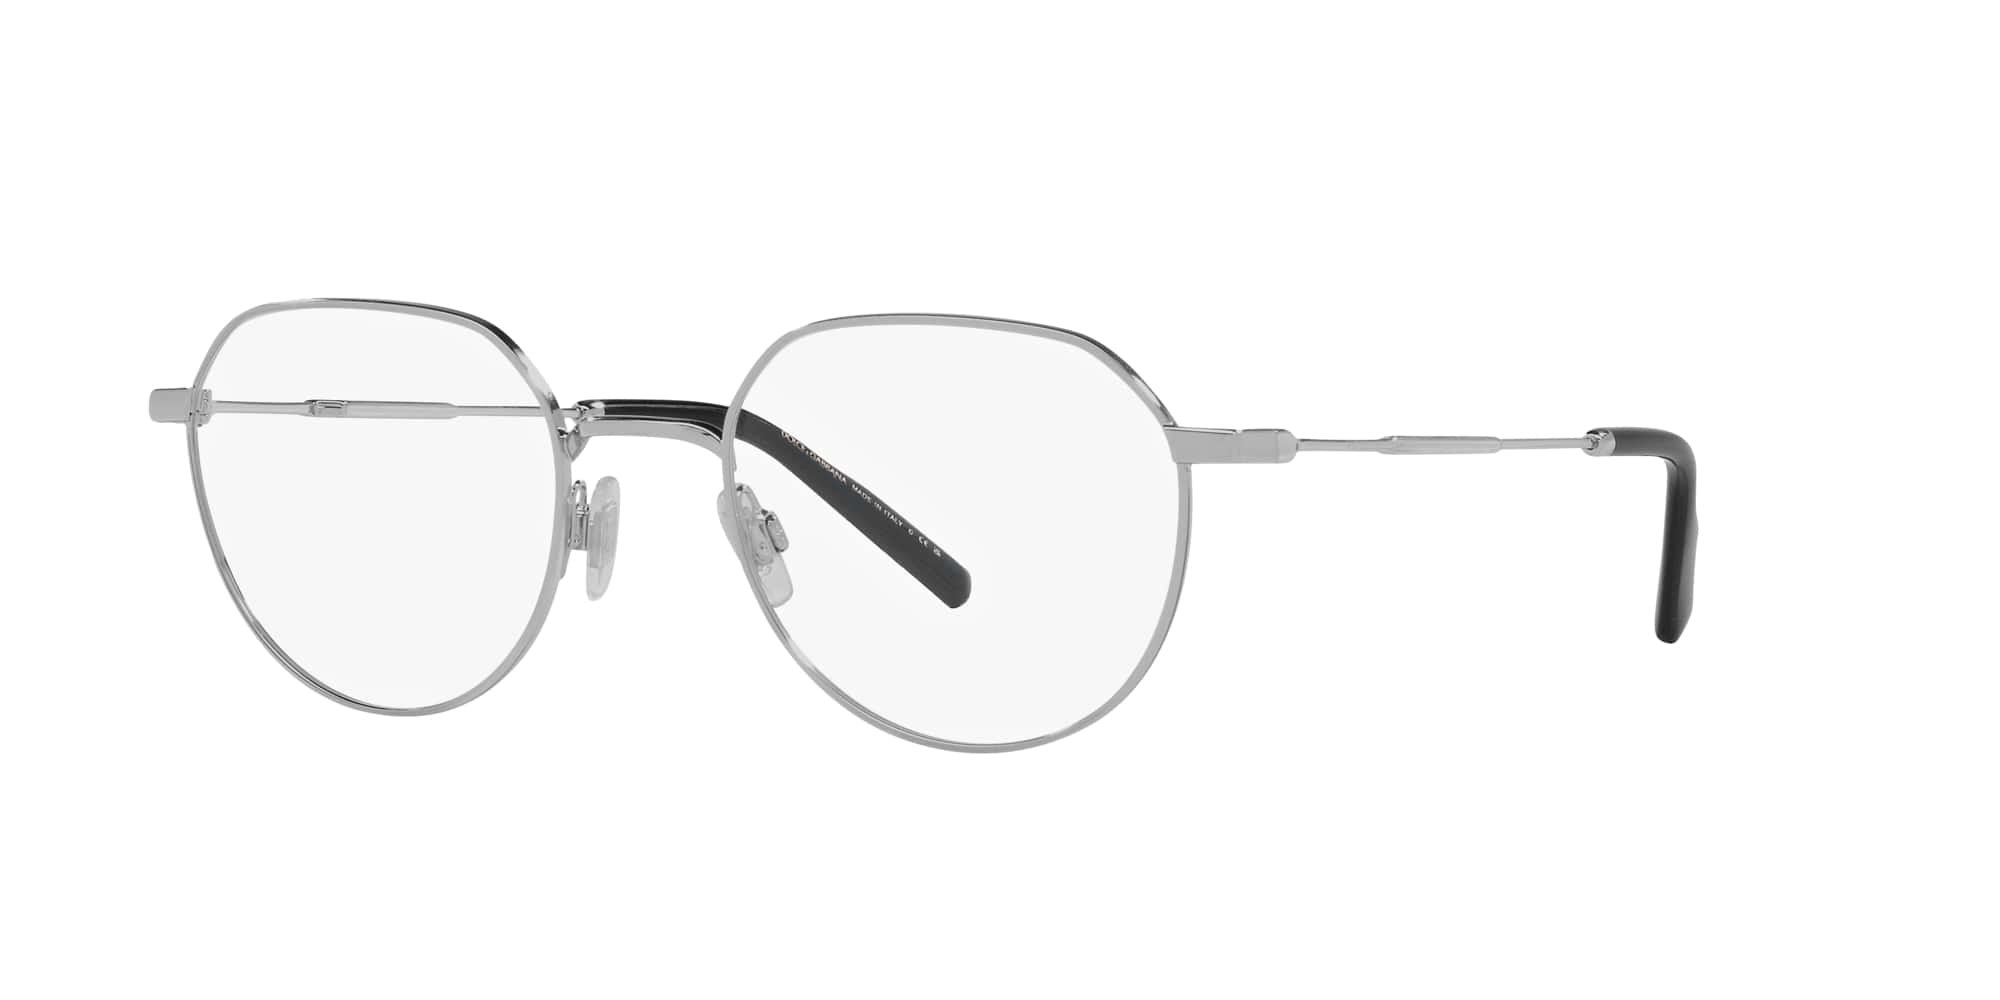 Das Bild zeigt die Korrektionsbrille DG1349 05 von der Marke D&G in silber.